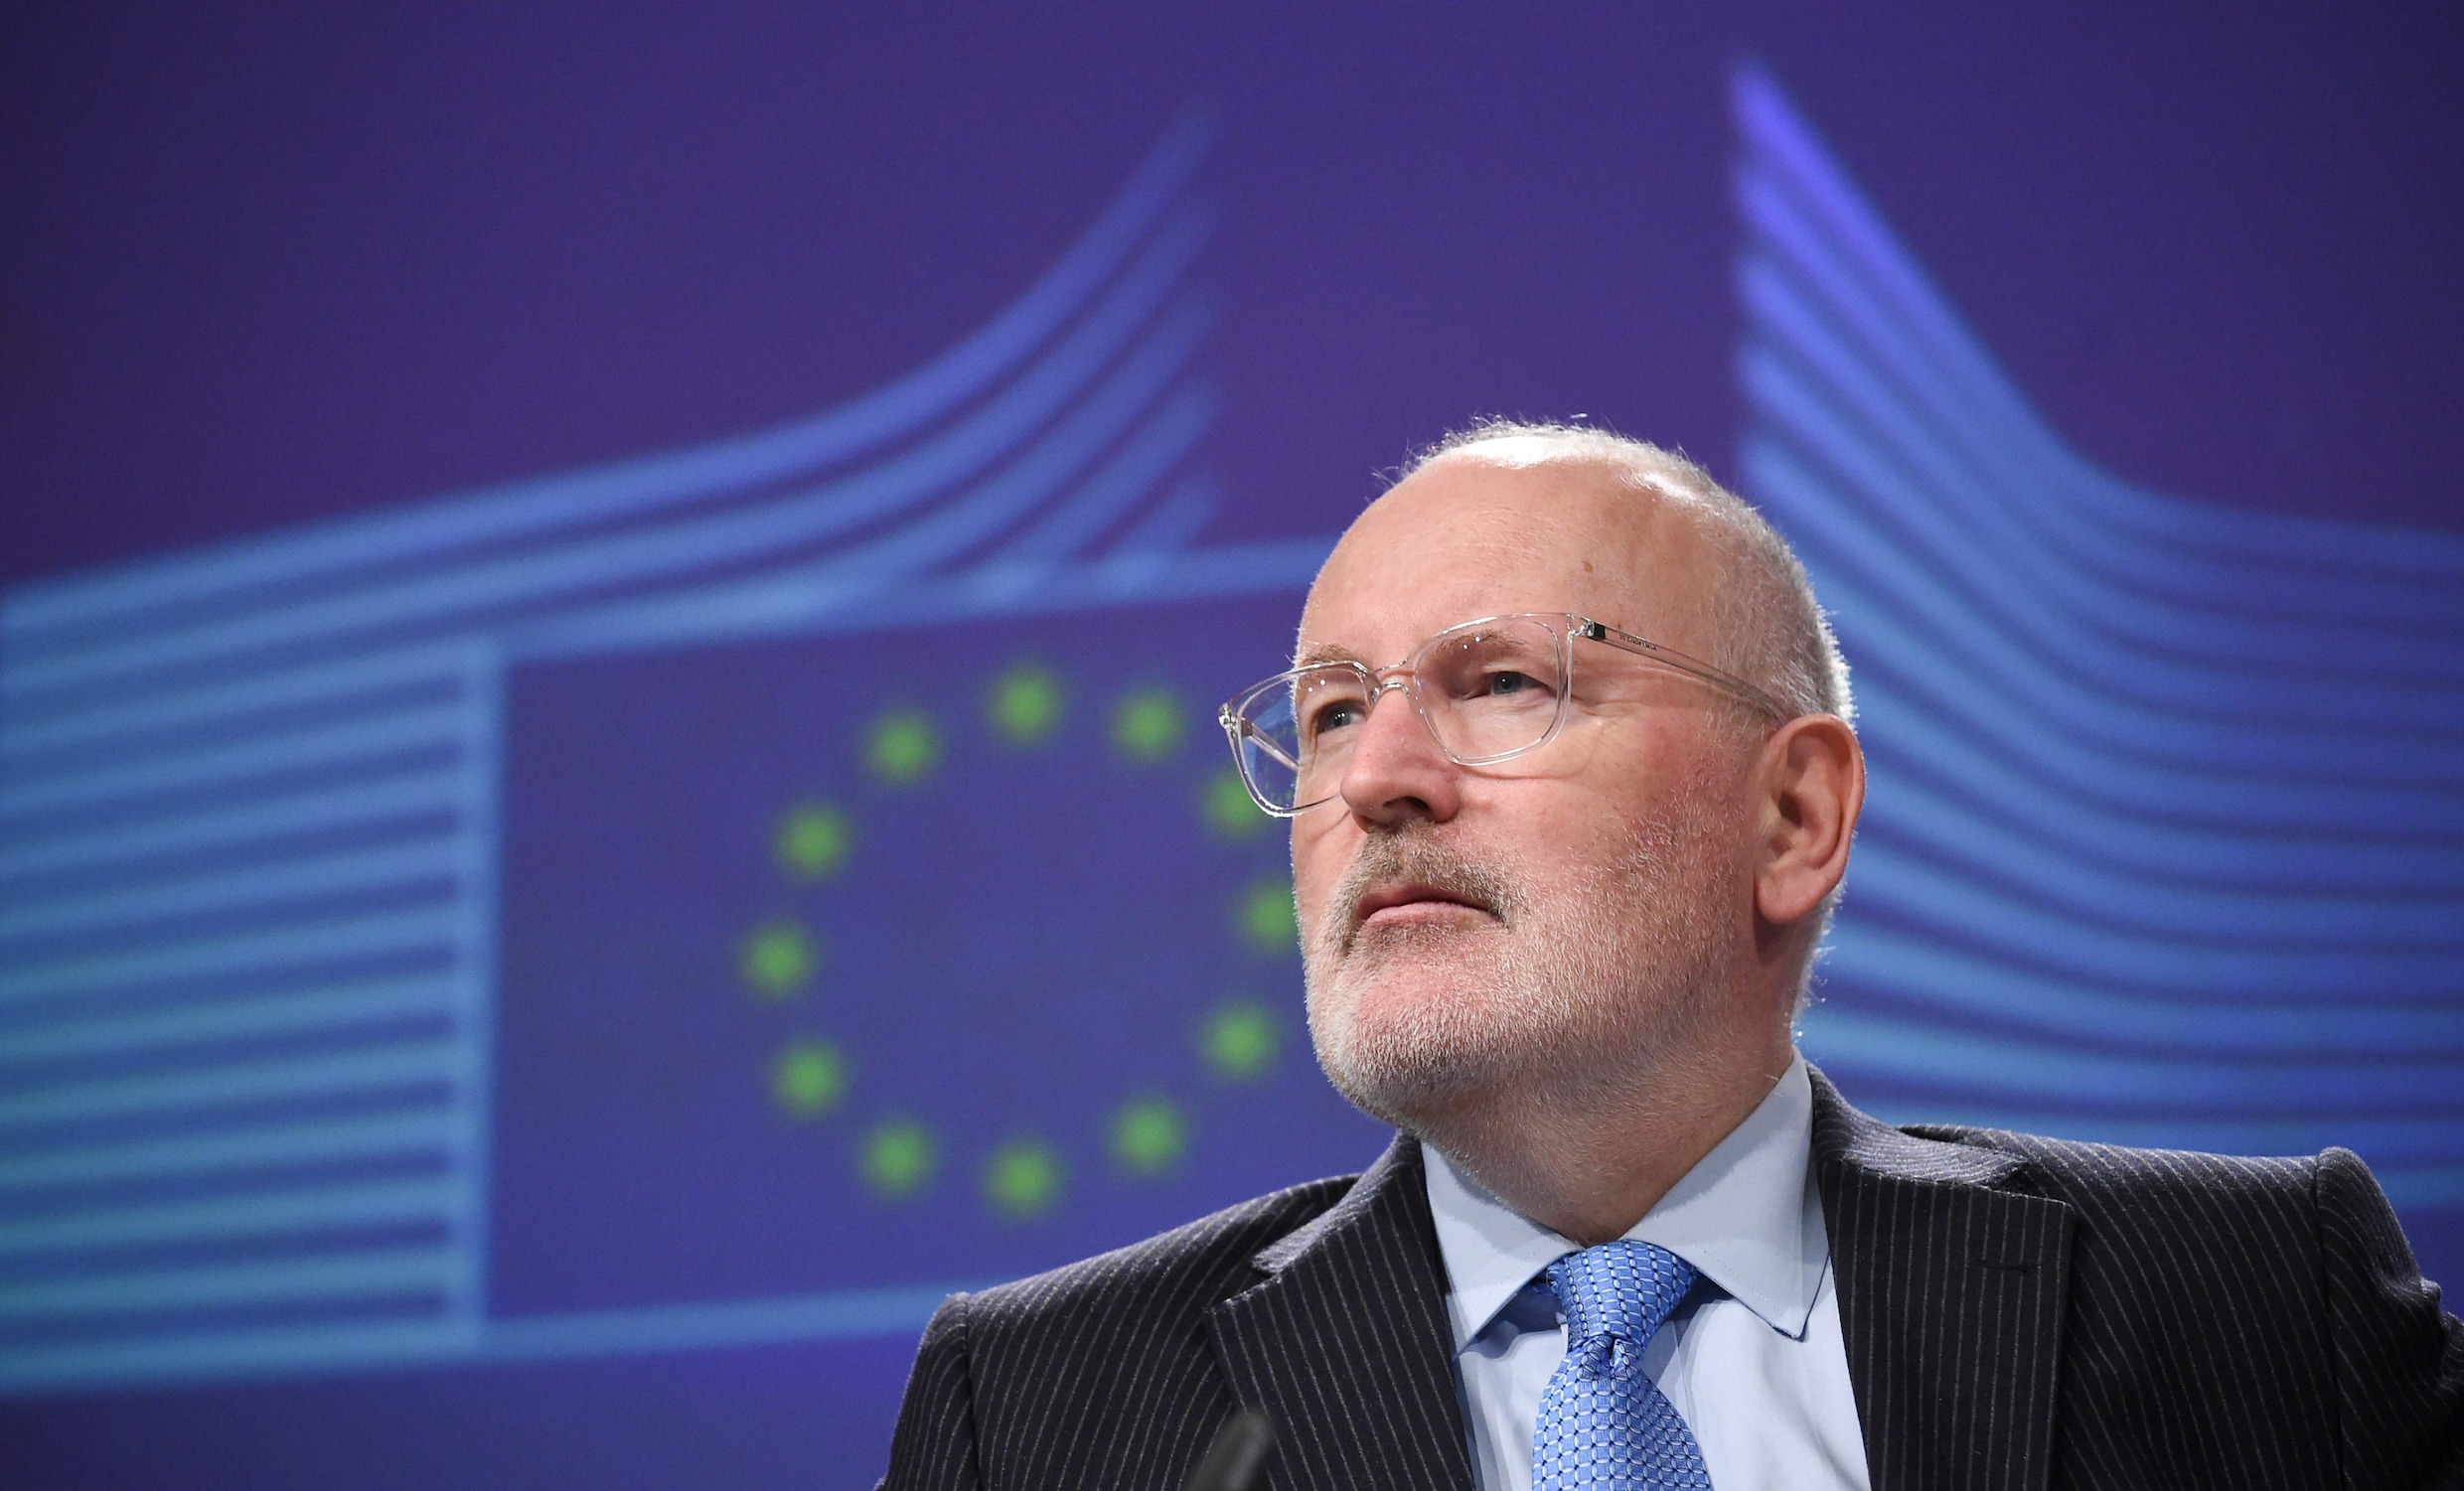 "De ziel van Europa staat op het spel": EU-commissaris Frans Timmermans wil voorzitter worden